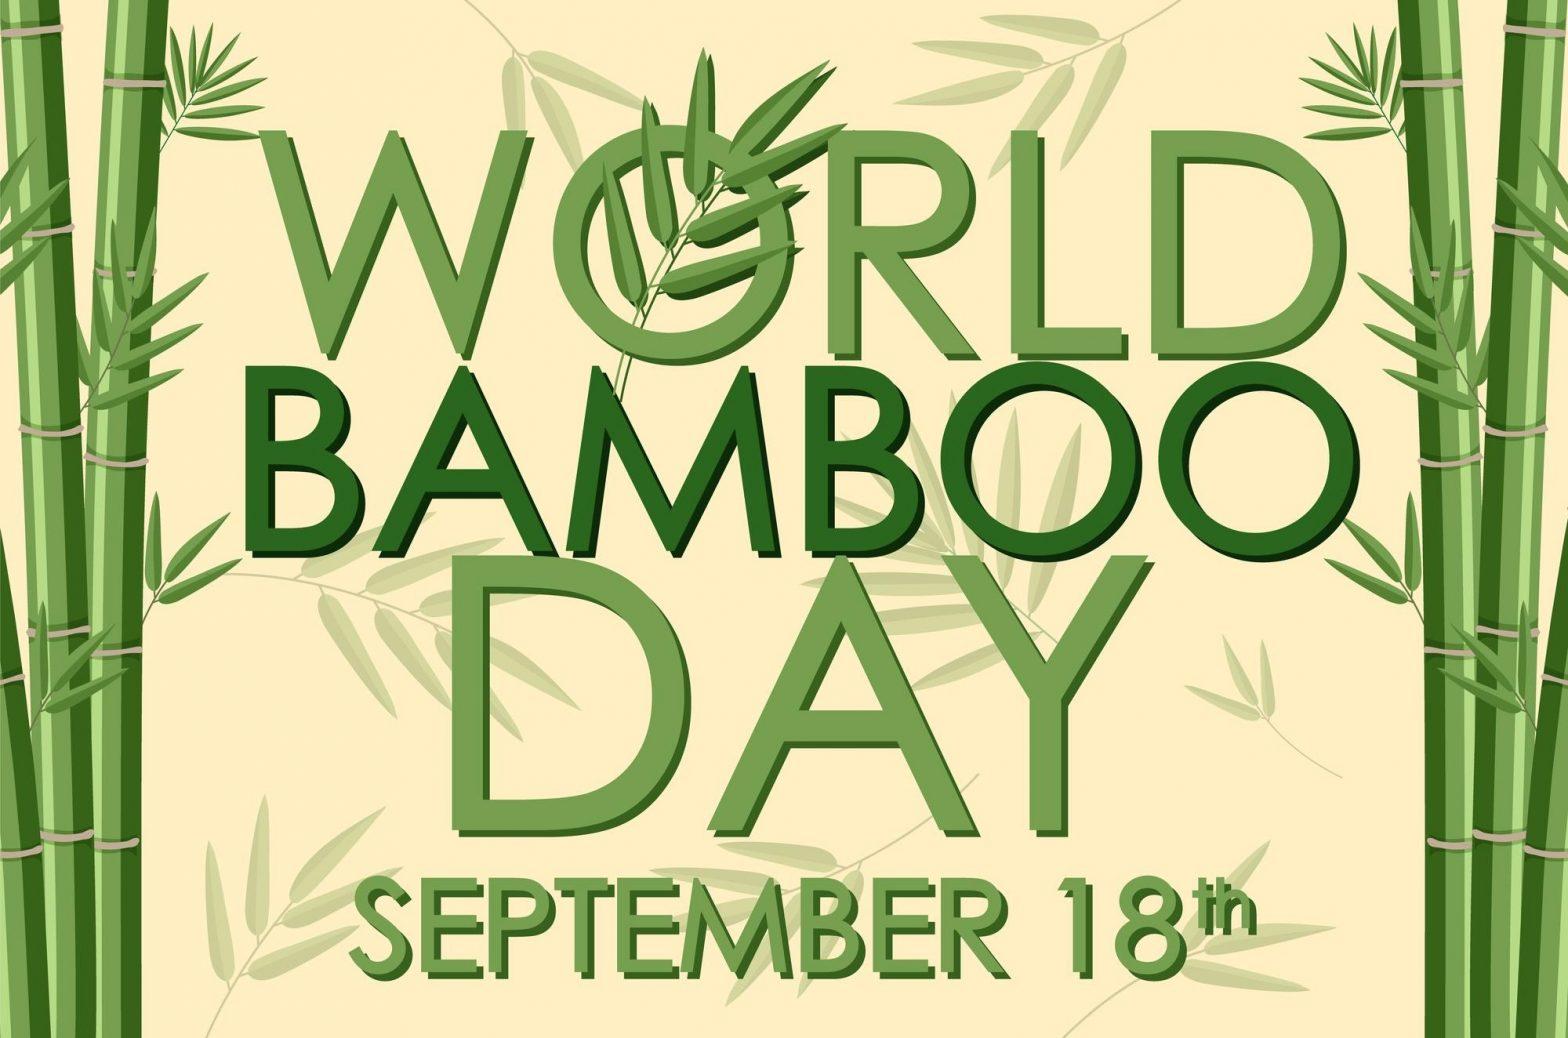 World Bamboo Day September 18 1308 114136 1568x1038 